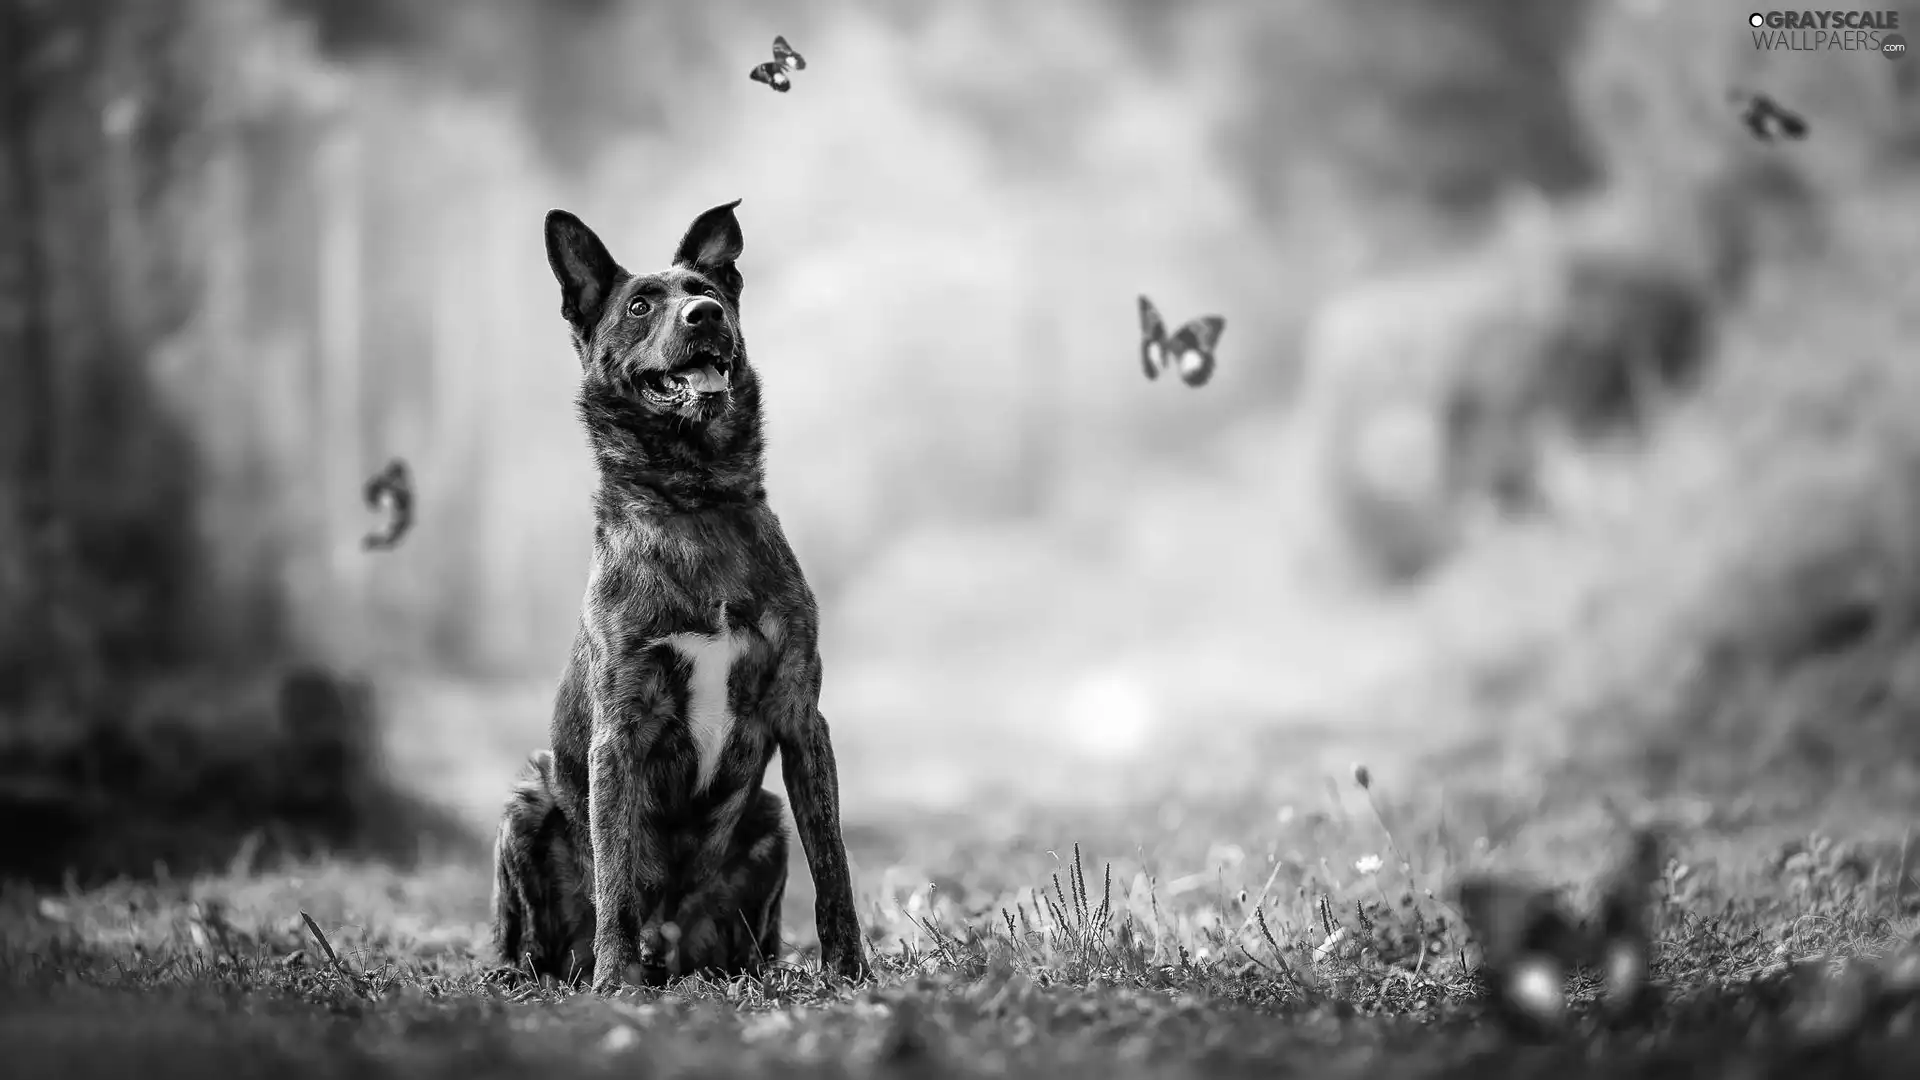 butterflies, dog, lea